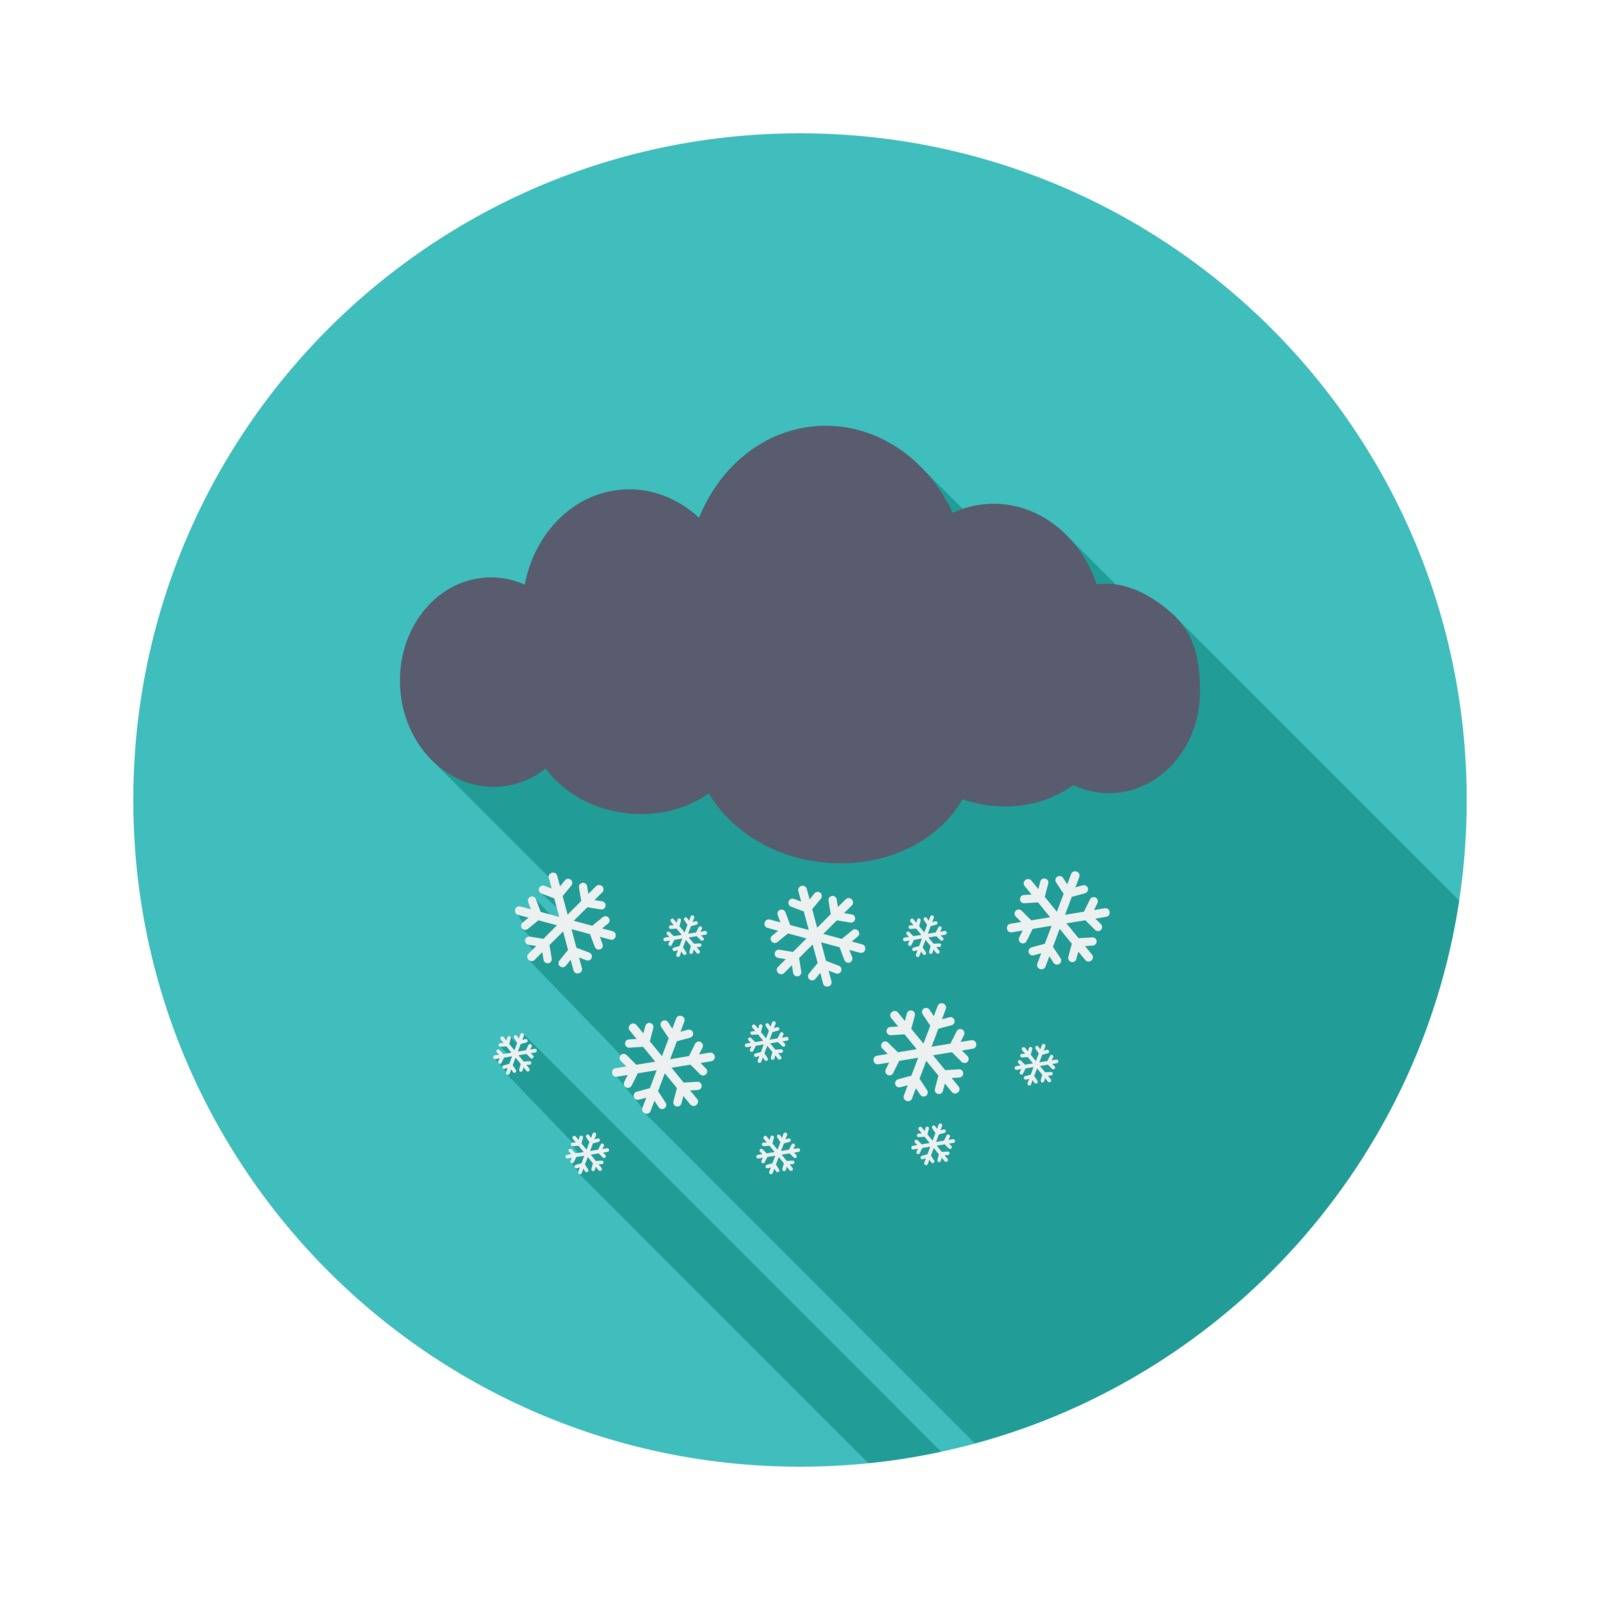 Snowfall single icon. by smoki